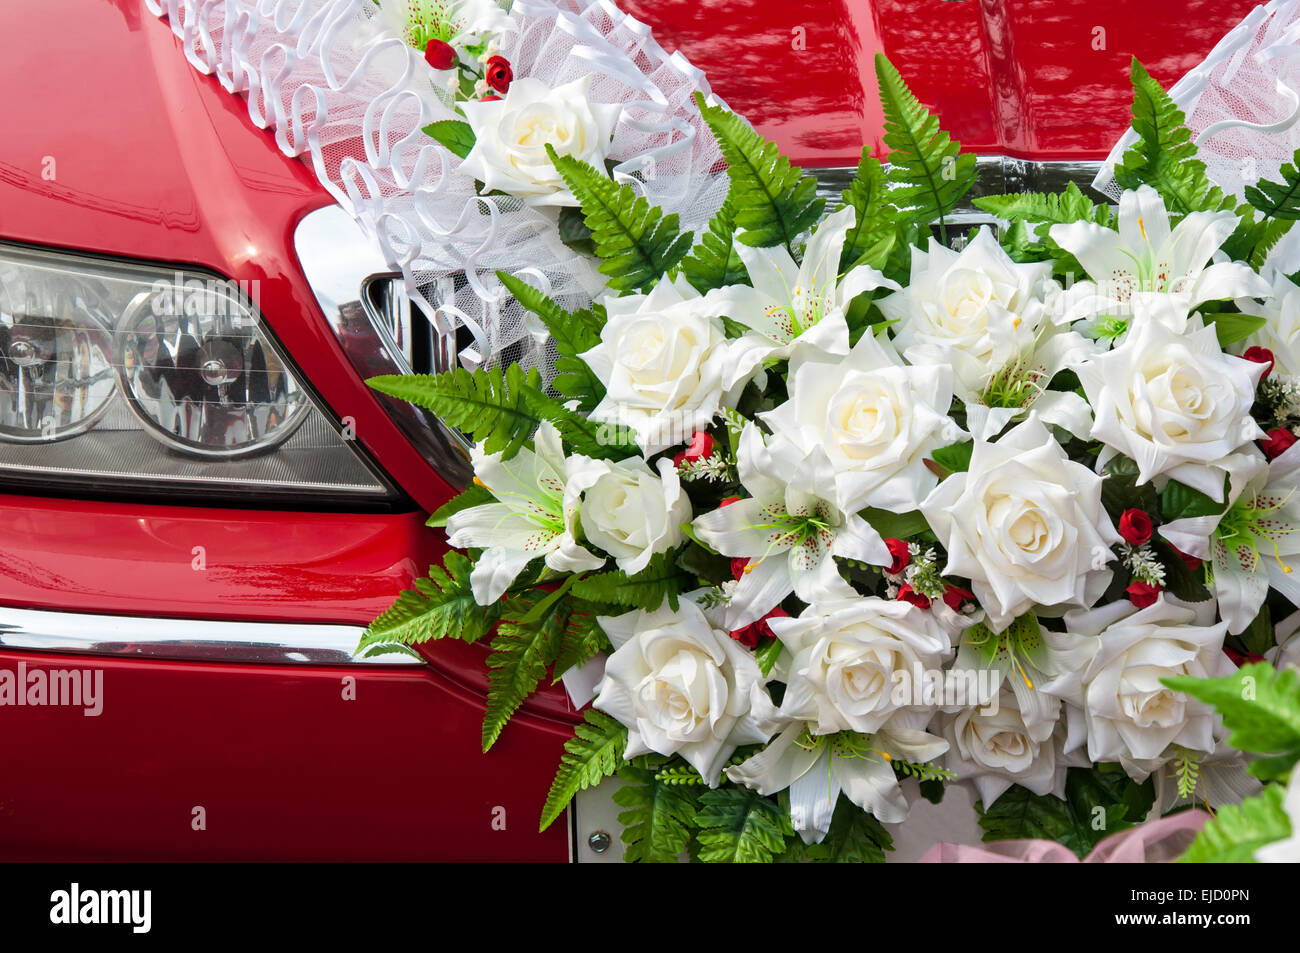 Hochzeit Auto Dekoration Für Bräutigam in Indien Redaktionelles  Stockfotografie - Bild von laub, fahrzeug: 214974632